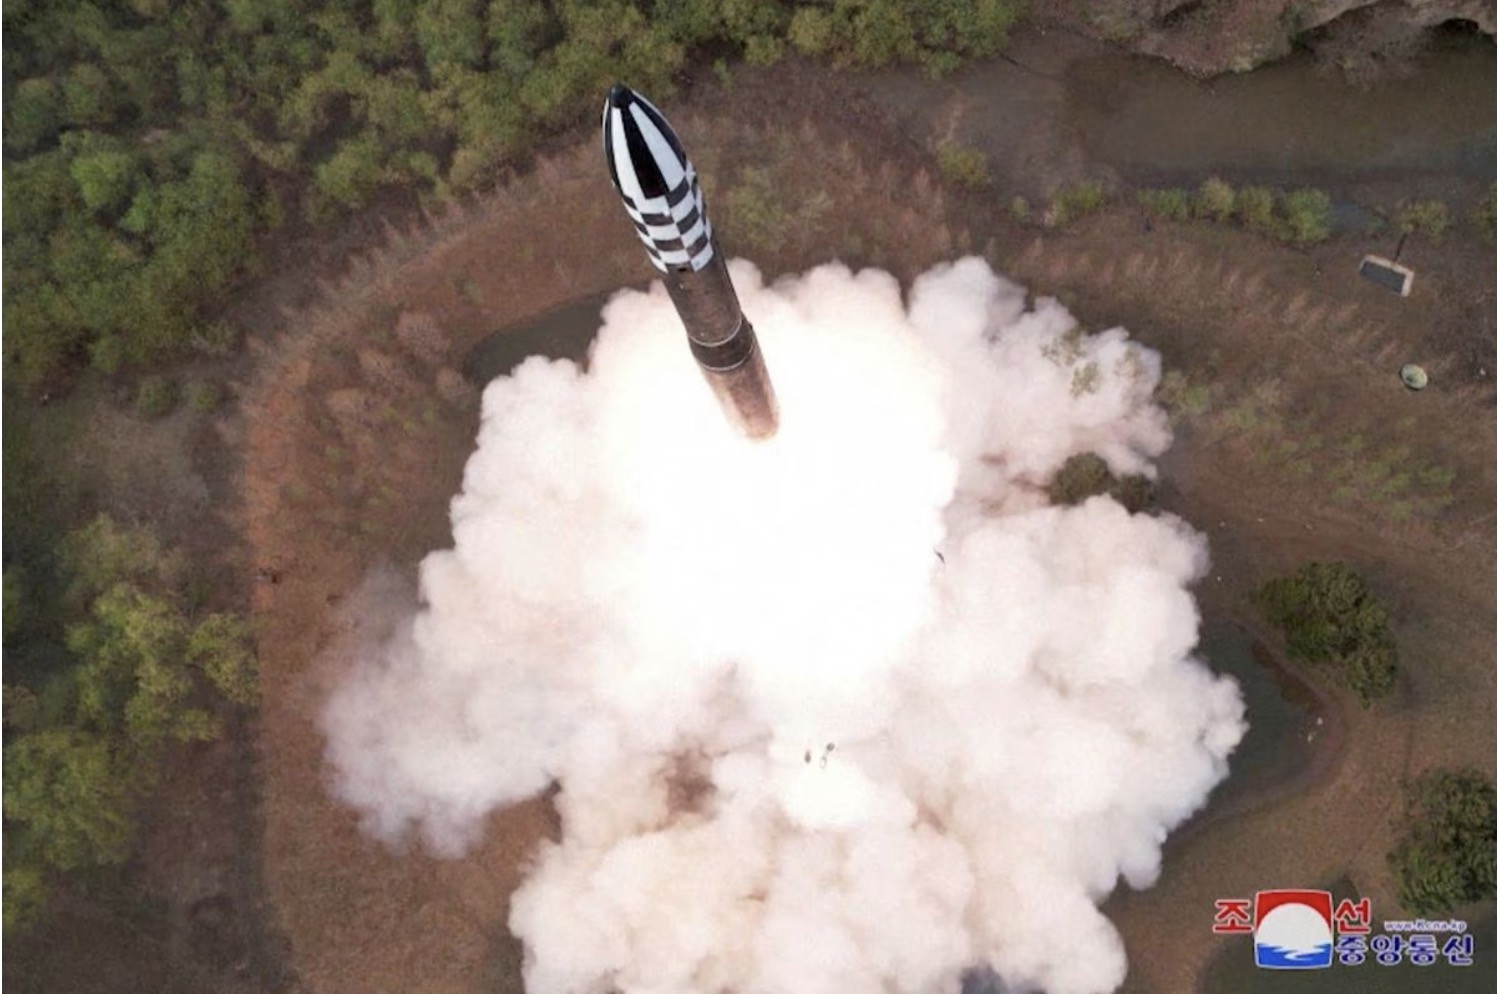 Nhật - Hàn kết nối radar để theo dõi tên lửa Triều Tiên